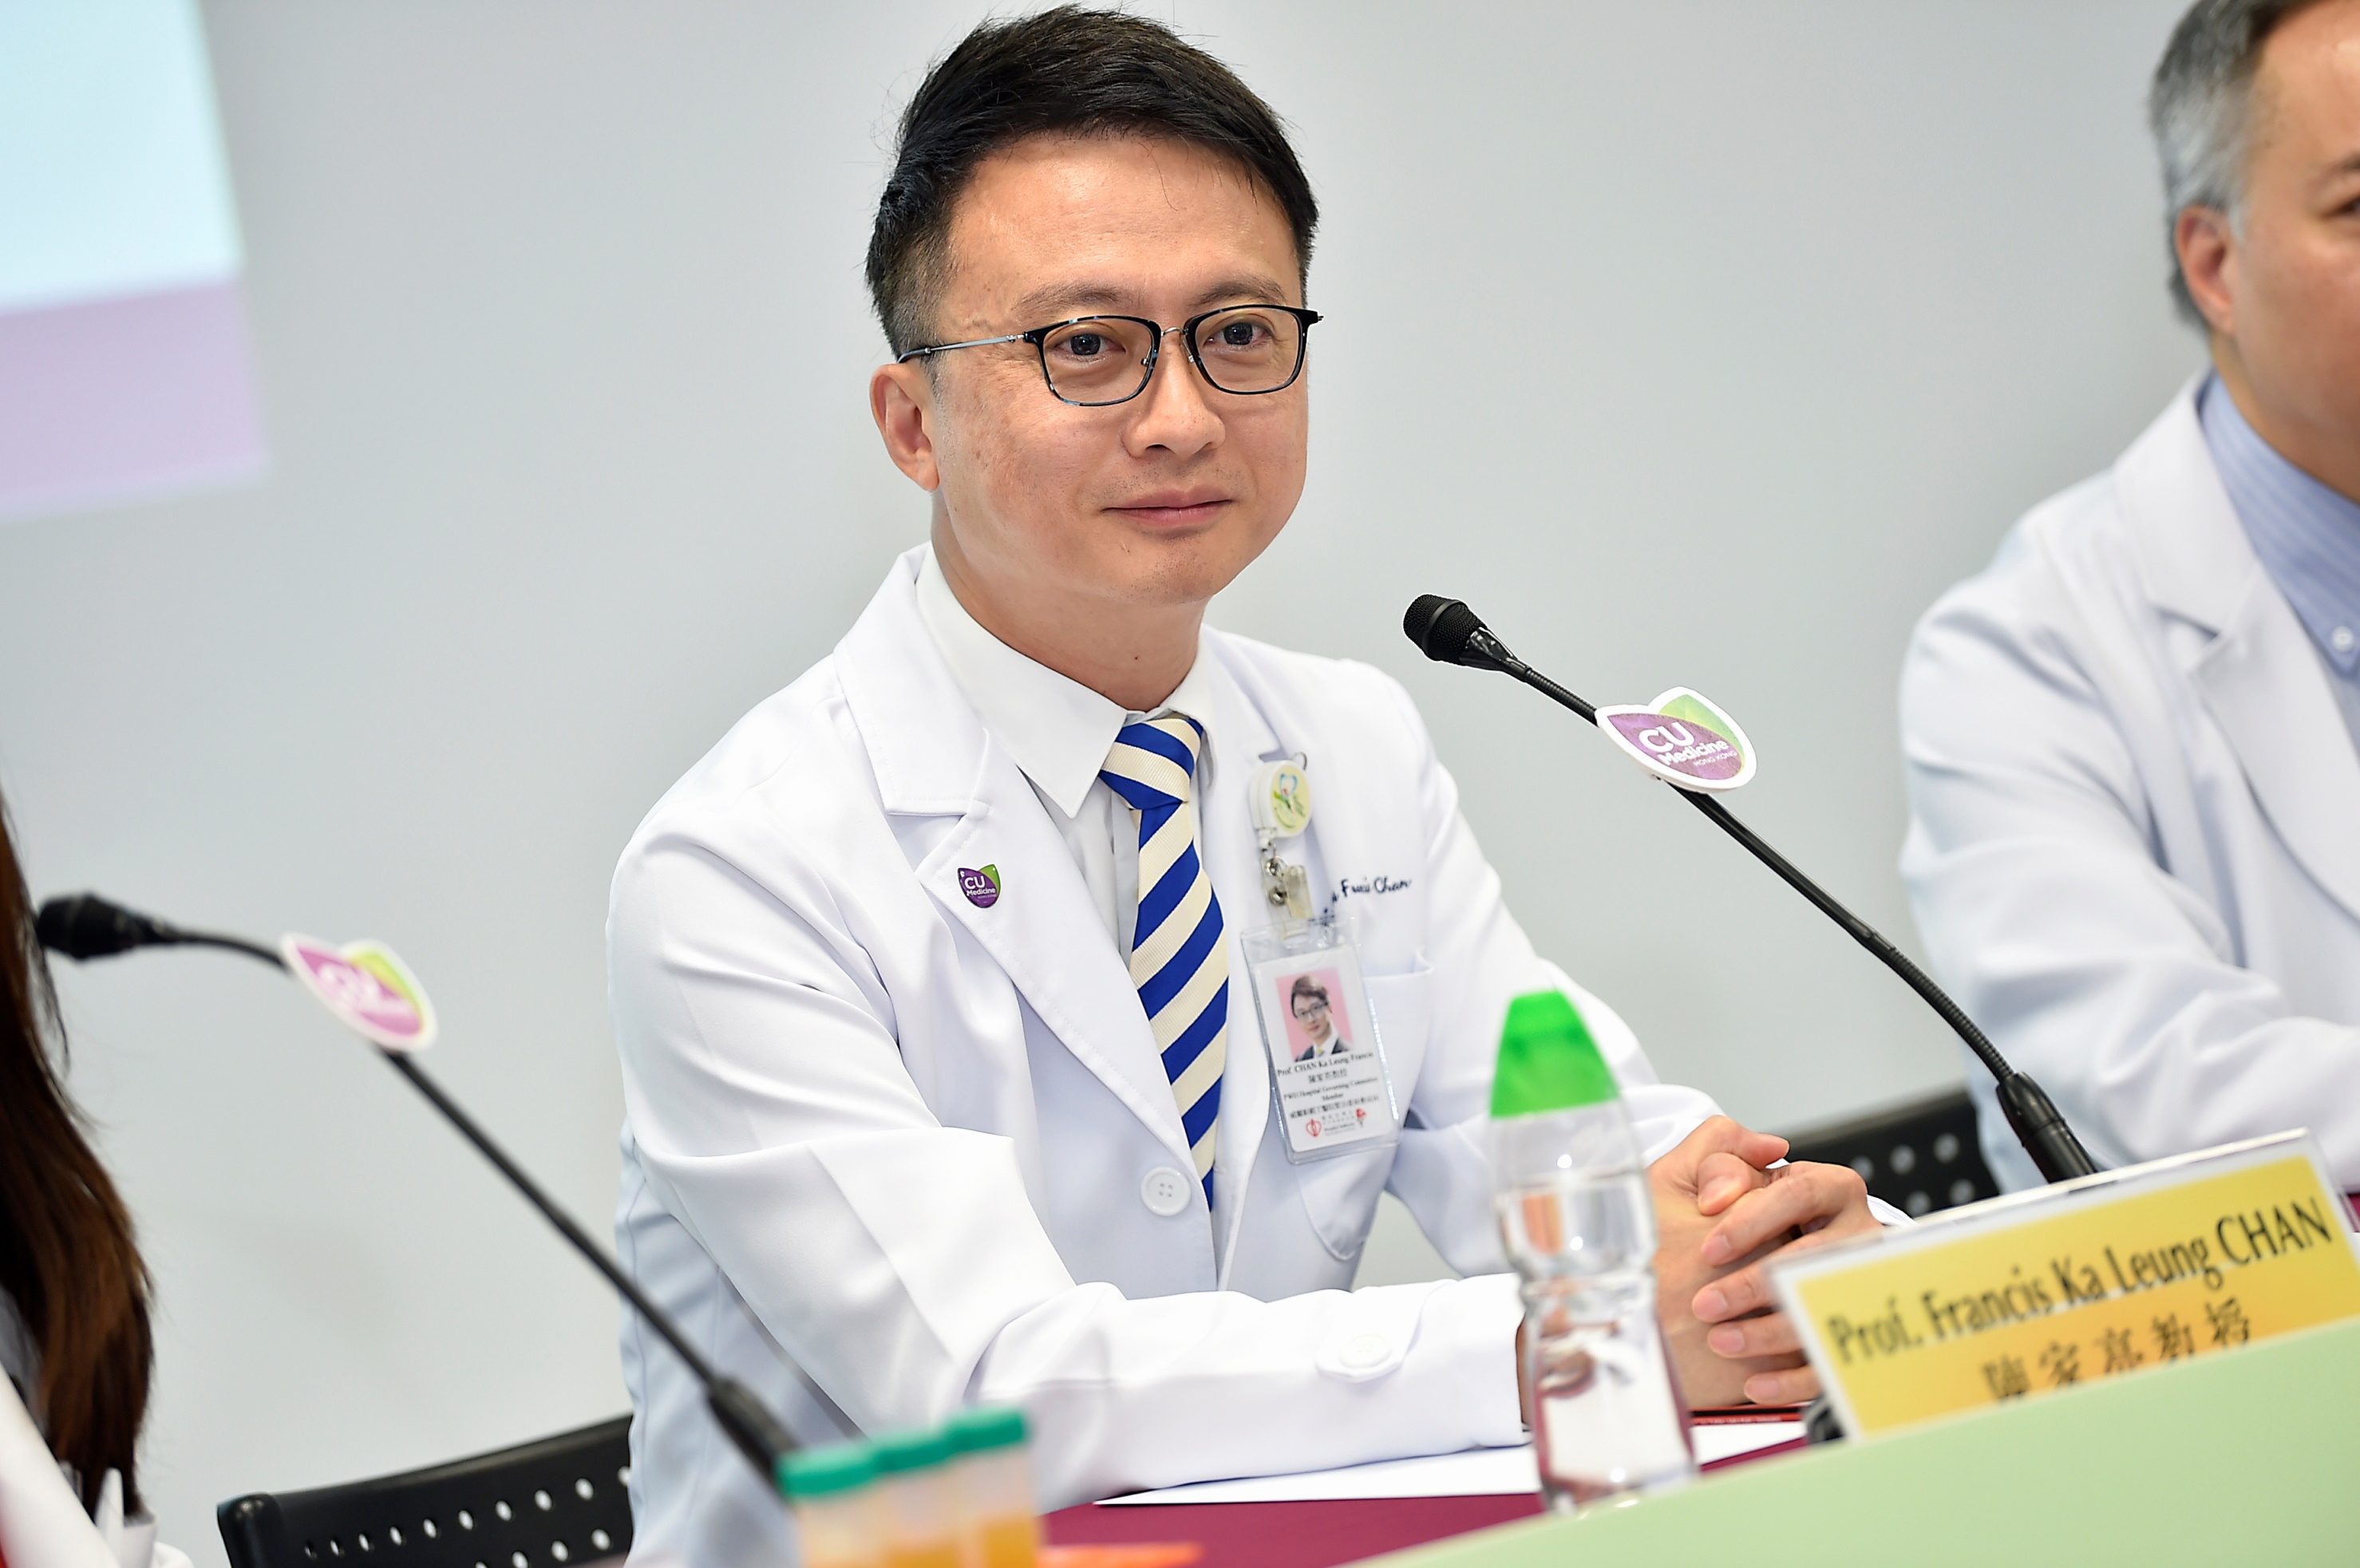 陳家亮教授表示中大醫學院自2016年起已經完成80多個腸道微生物群移植手術，當中包括成功醫治因腸胃道疾病而生命垂危的病人。